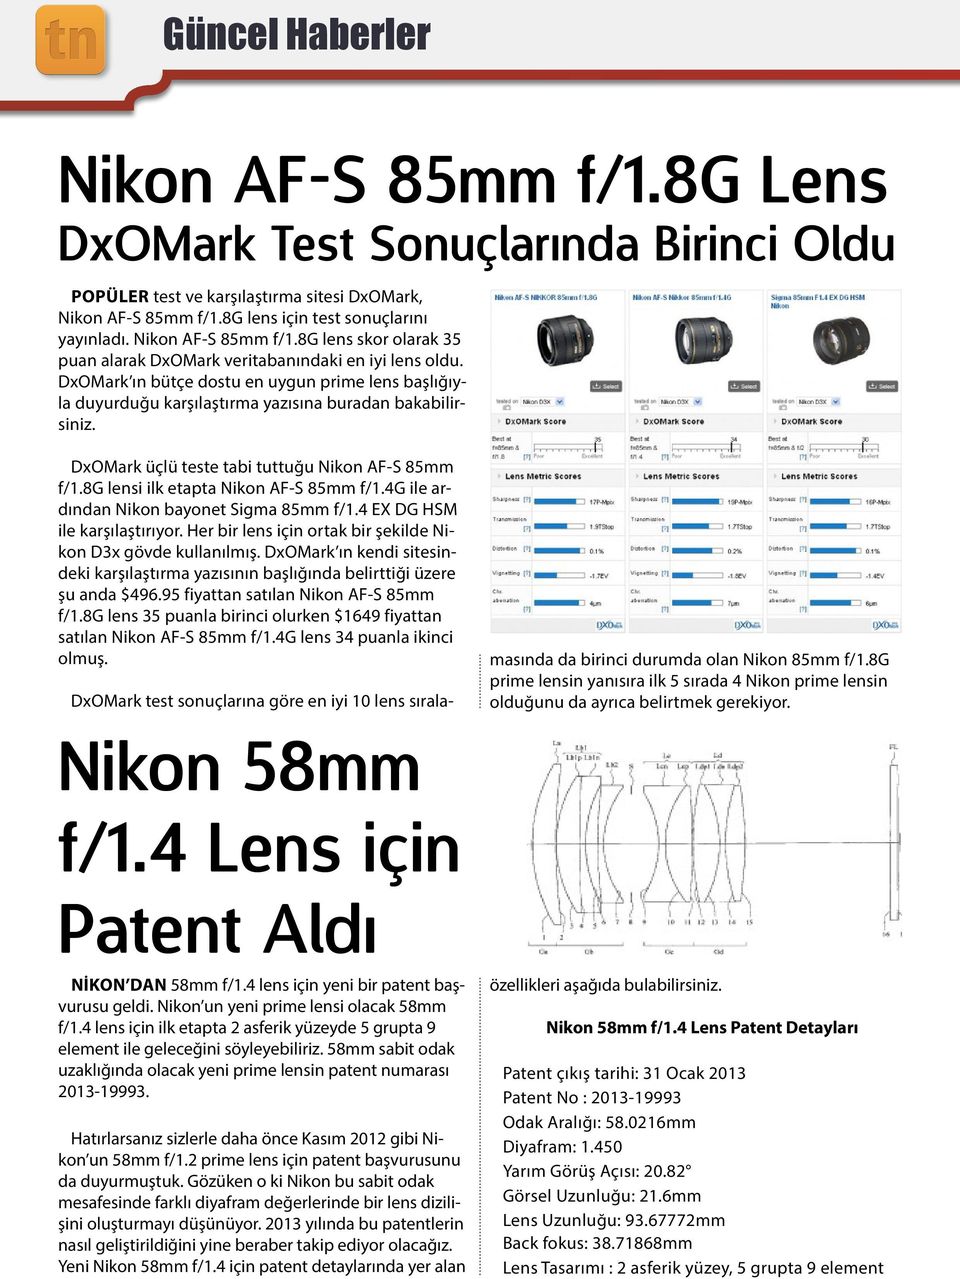 DxOMark ın bütçe dostu en uygun prime lens başlığıyla duyurduğu karşılaştırma yazısına buradan bakabilirsiniz. DxOMark üçlü teste tabi tuttuğu Nikon AF-S 85mm f/1.